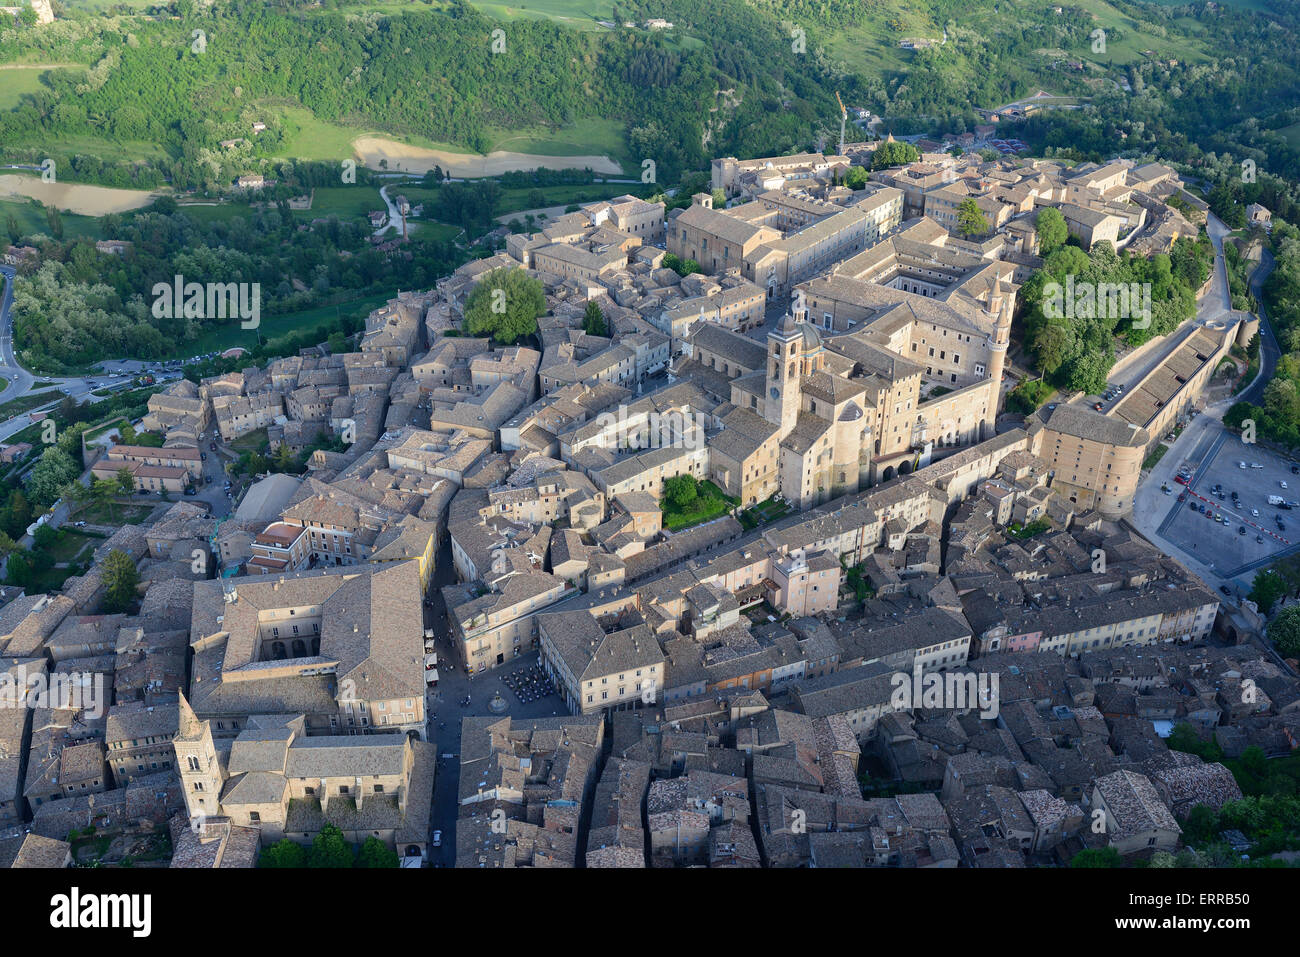 LUFTAUFNAHME. Malerische mittelalterliche Stadt, die zum UNESCO-Weltkulturerbe gehört. Urbino, Provinz Pesaro und Urbino, Marken, Italien. Stockfoto